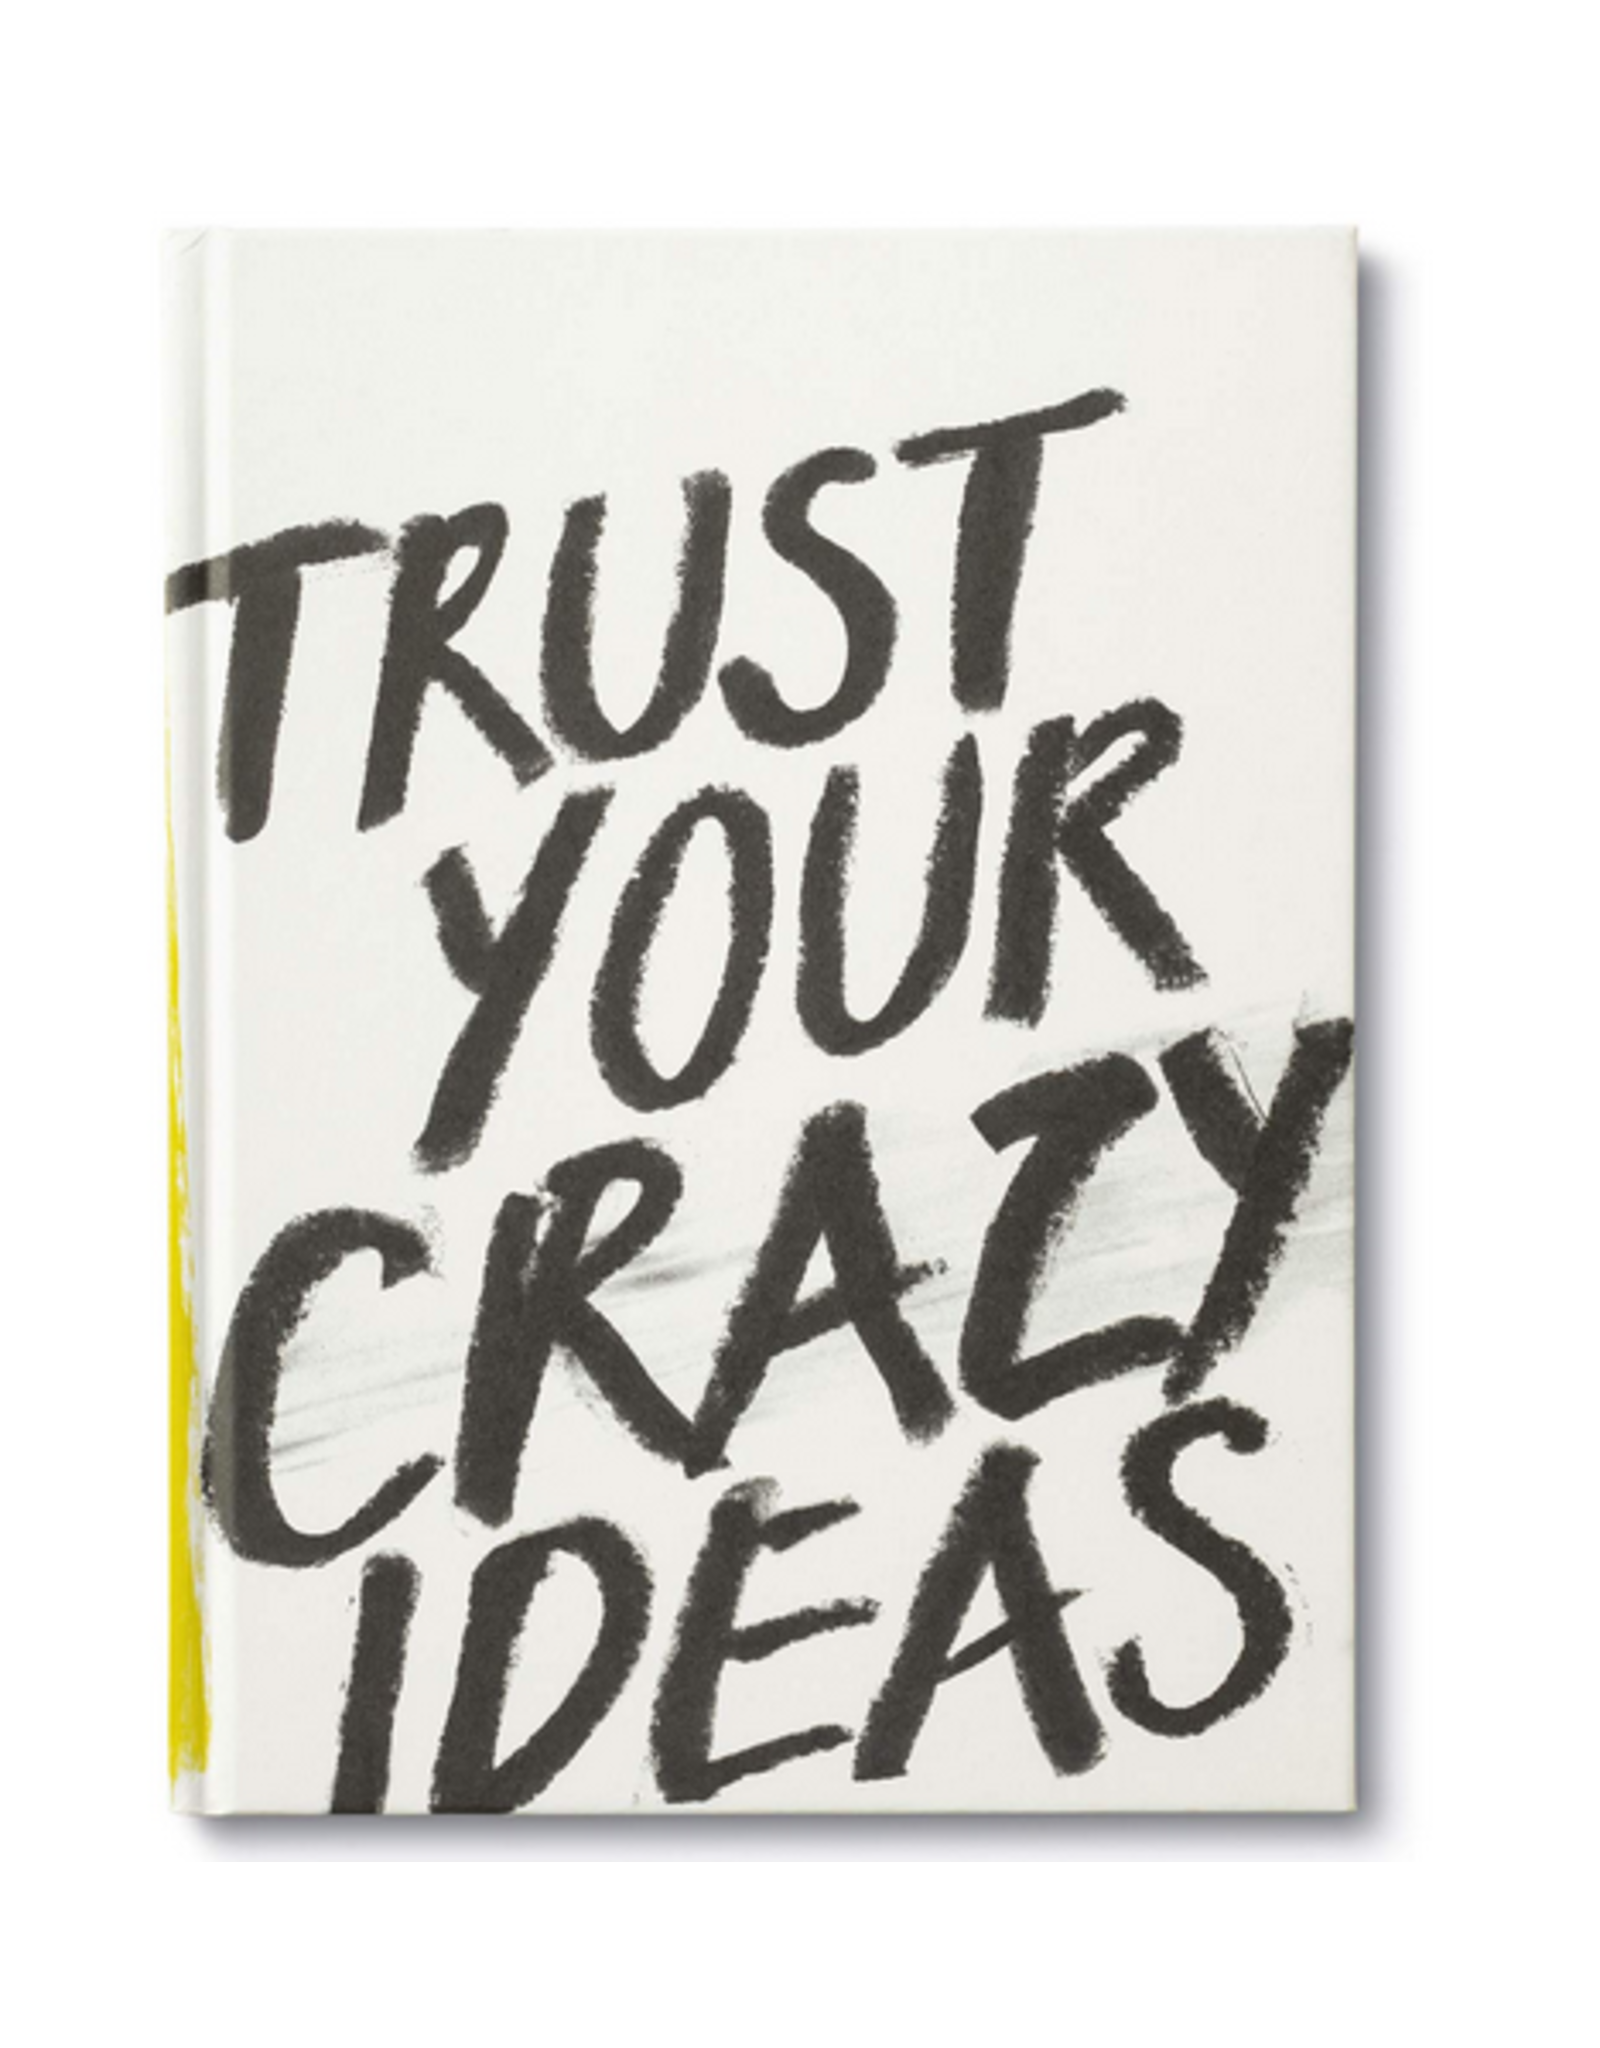 Compendium, Inc. Book, Trust Your Crazy Ideas